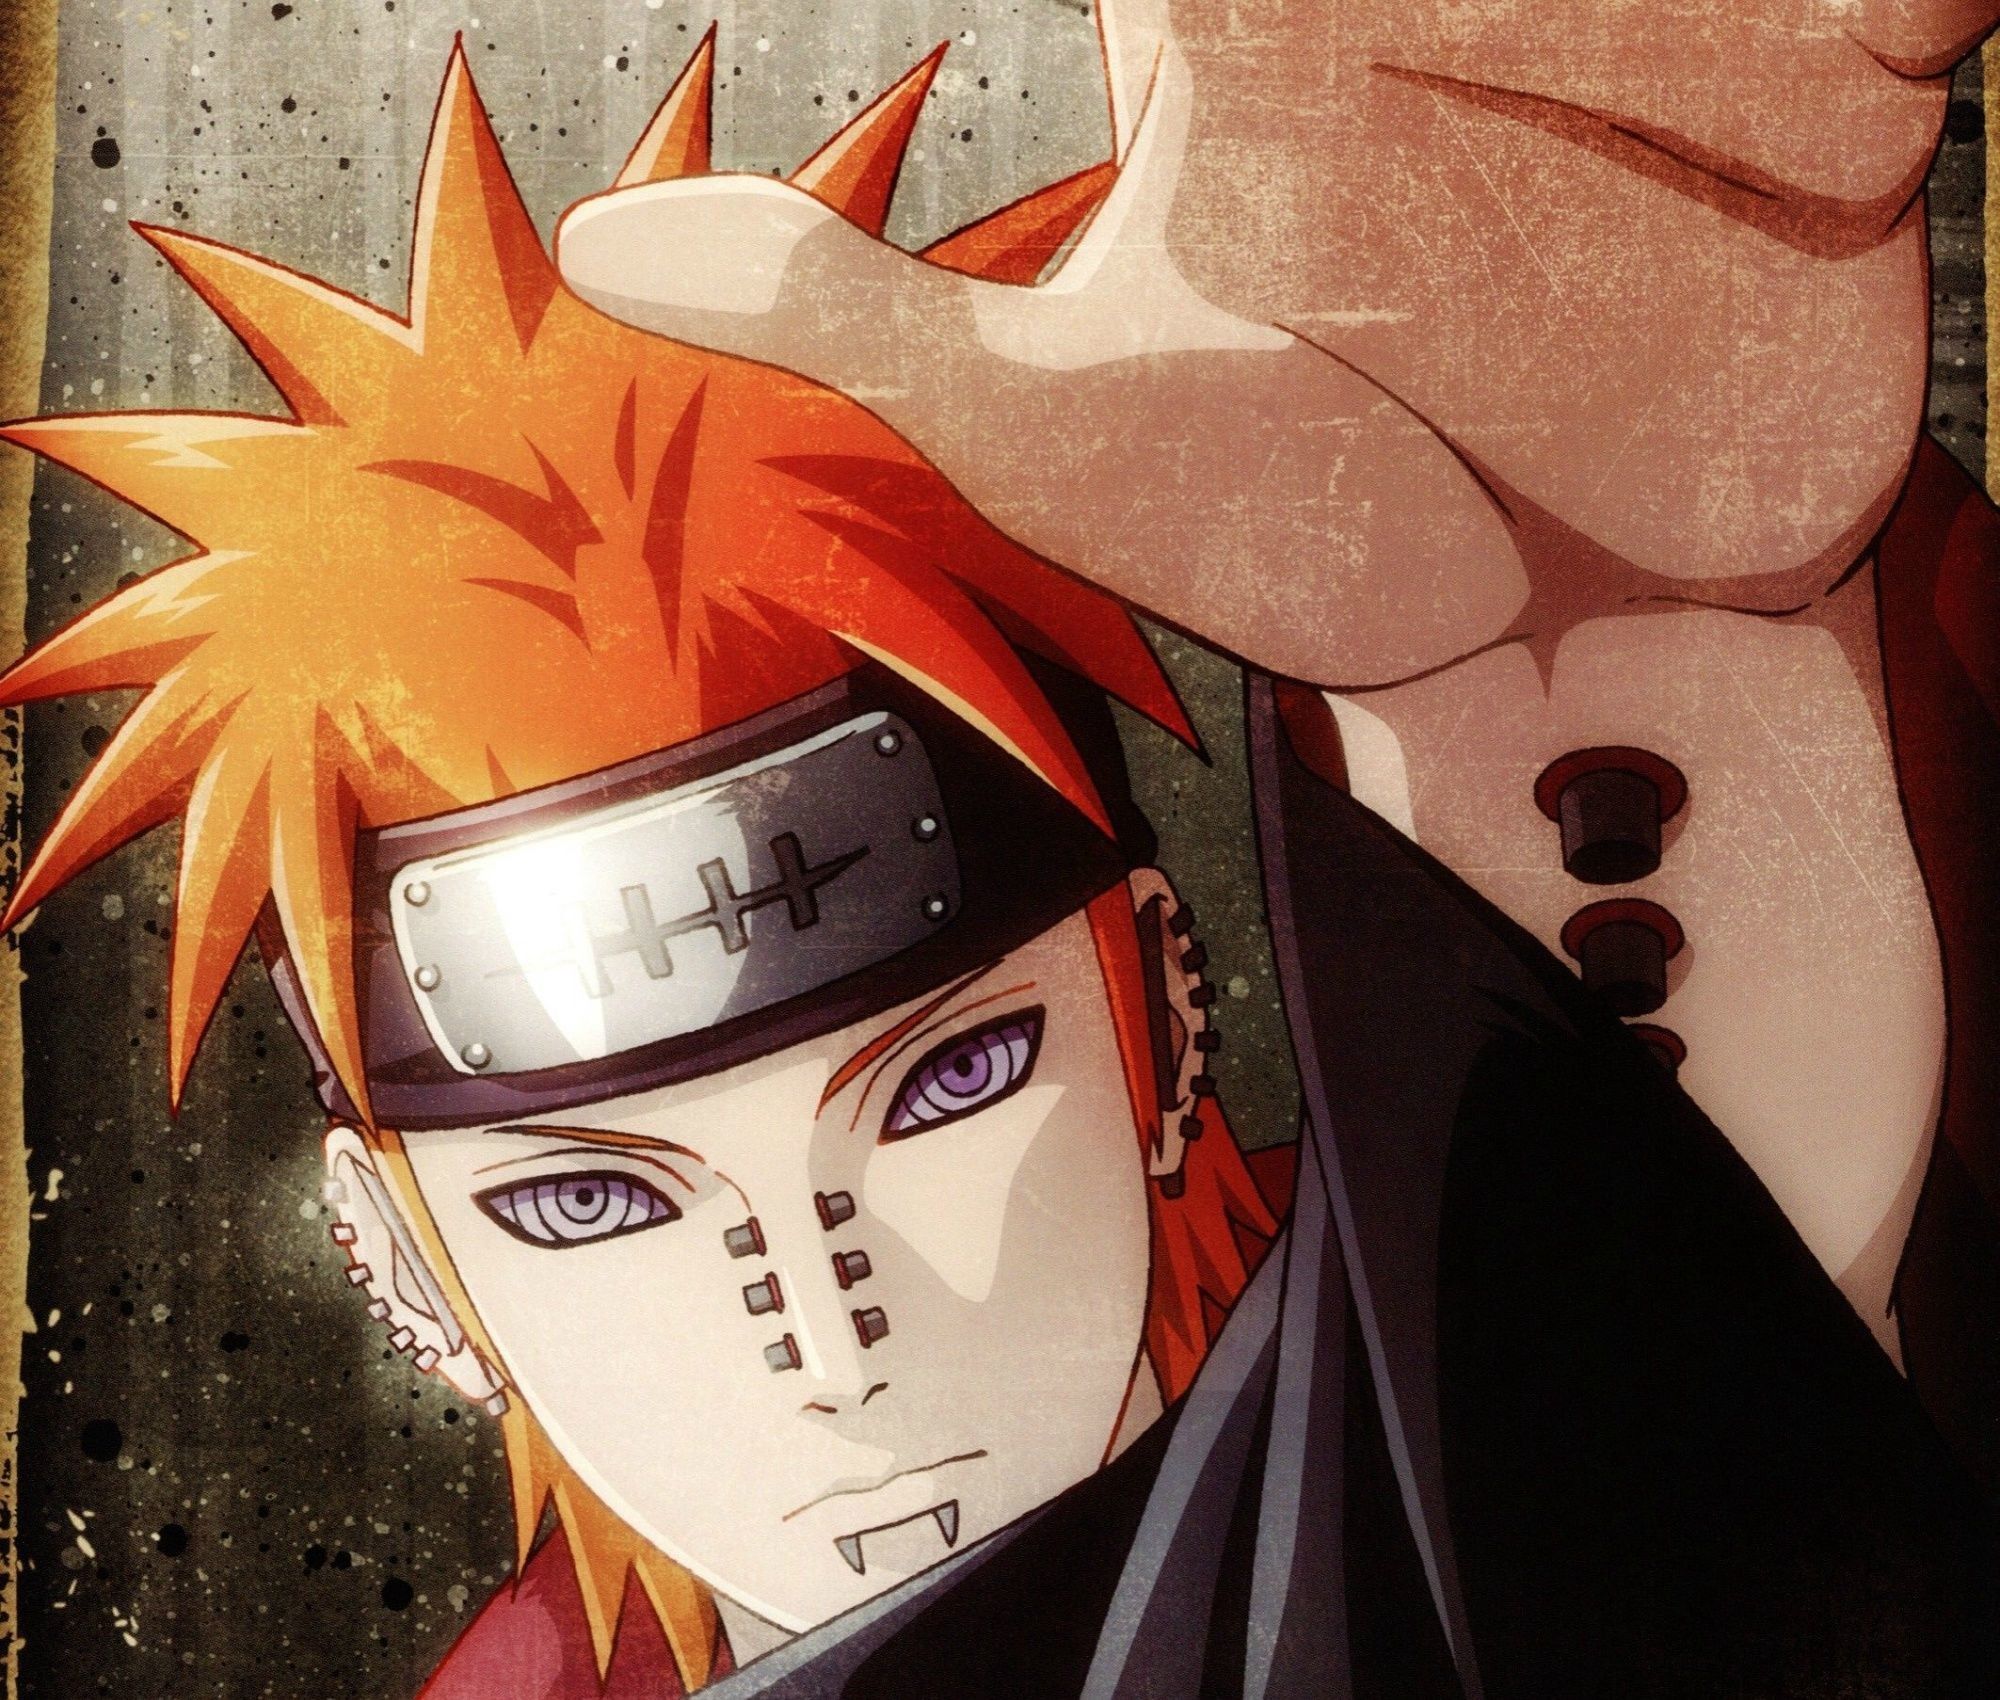 Pain In Naruto Wallpaper Hd gambar ke 7